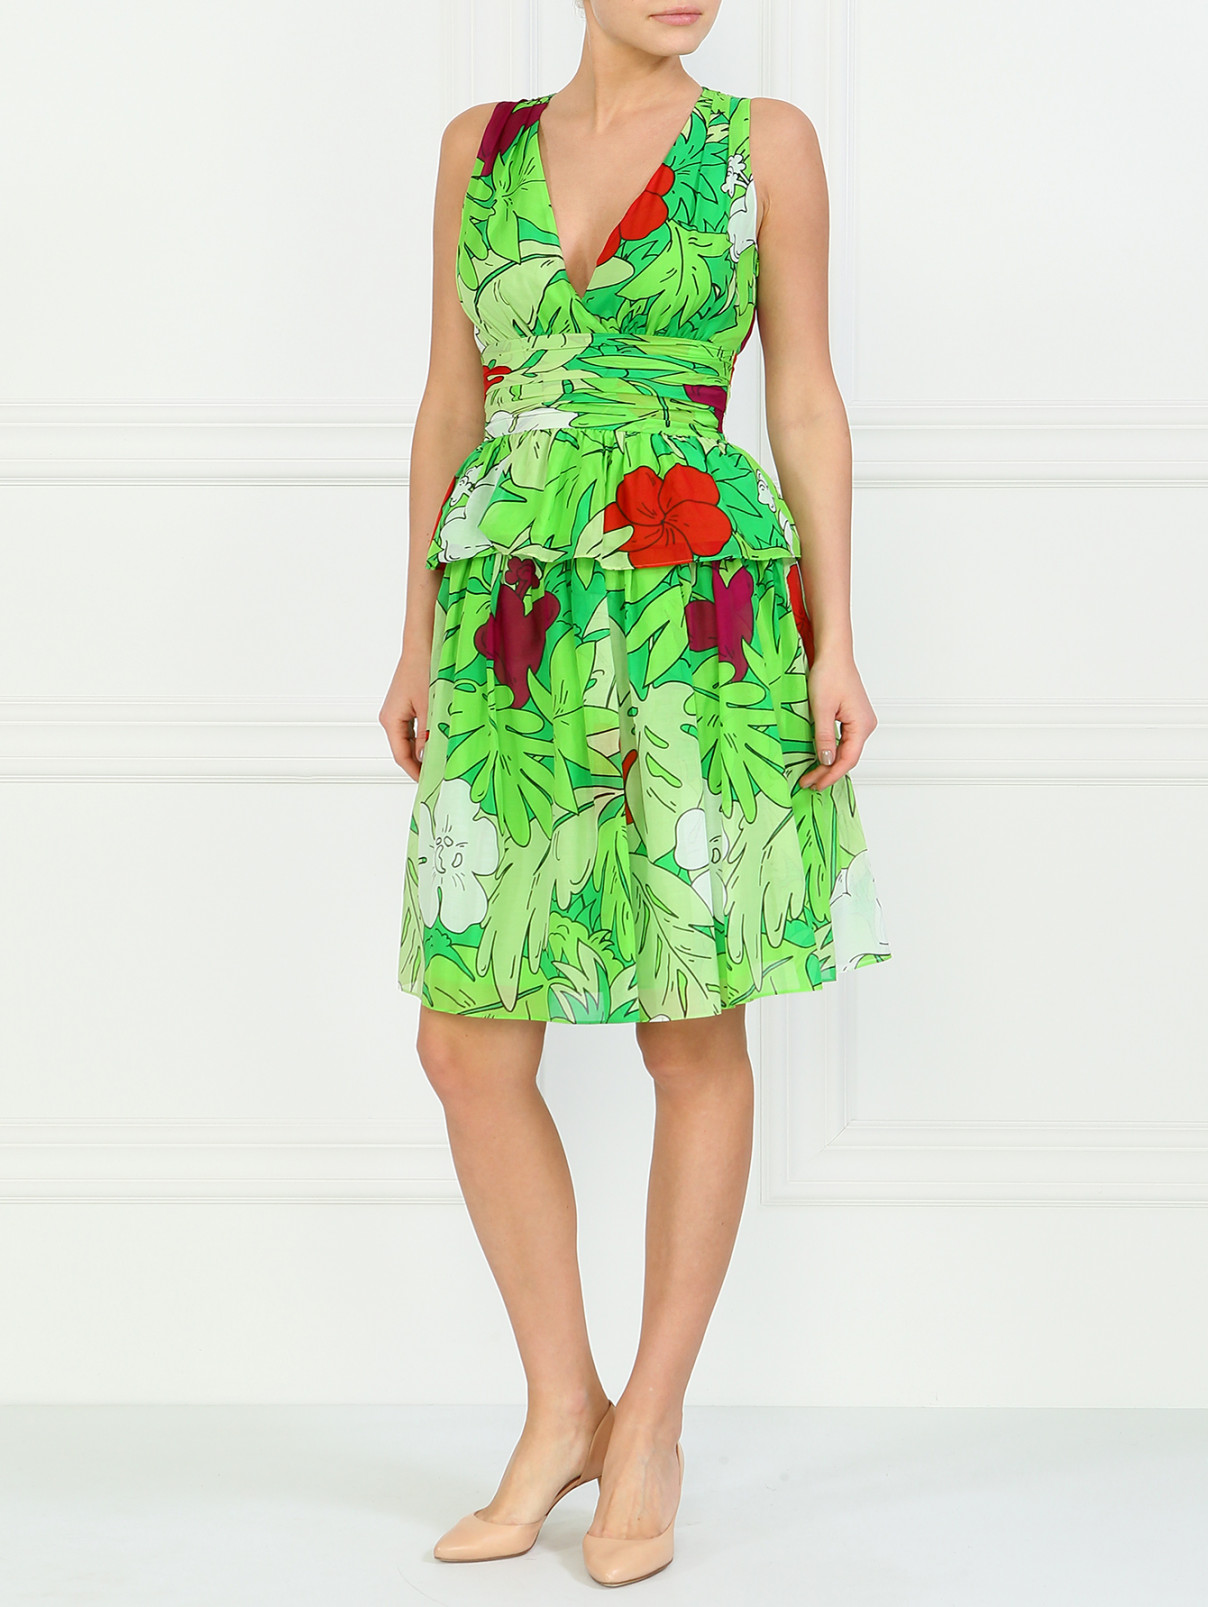 Блуза с цветочным принтом Moschino Cheap&Chic  –  Модель Общий вид  – Цвет:  Зеленый